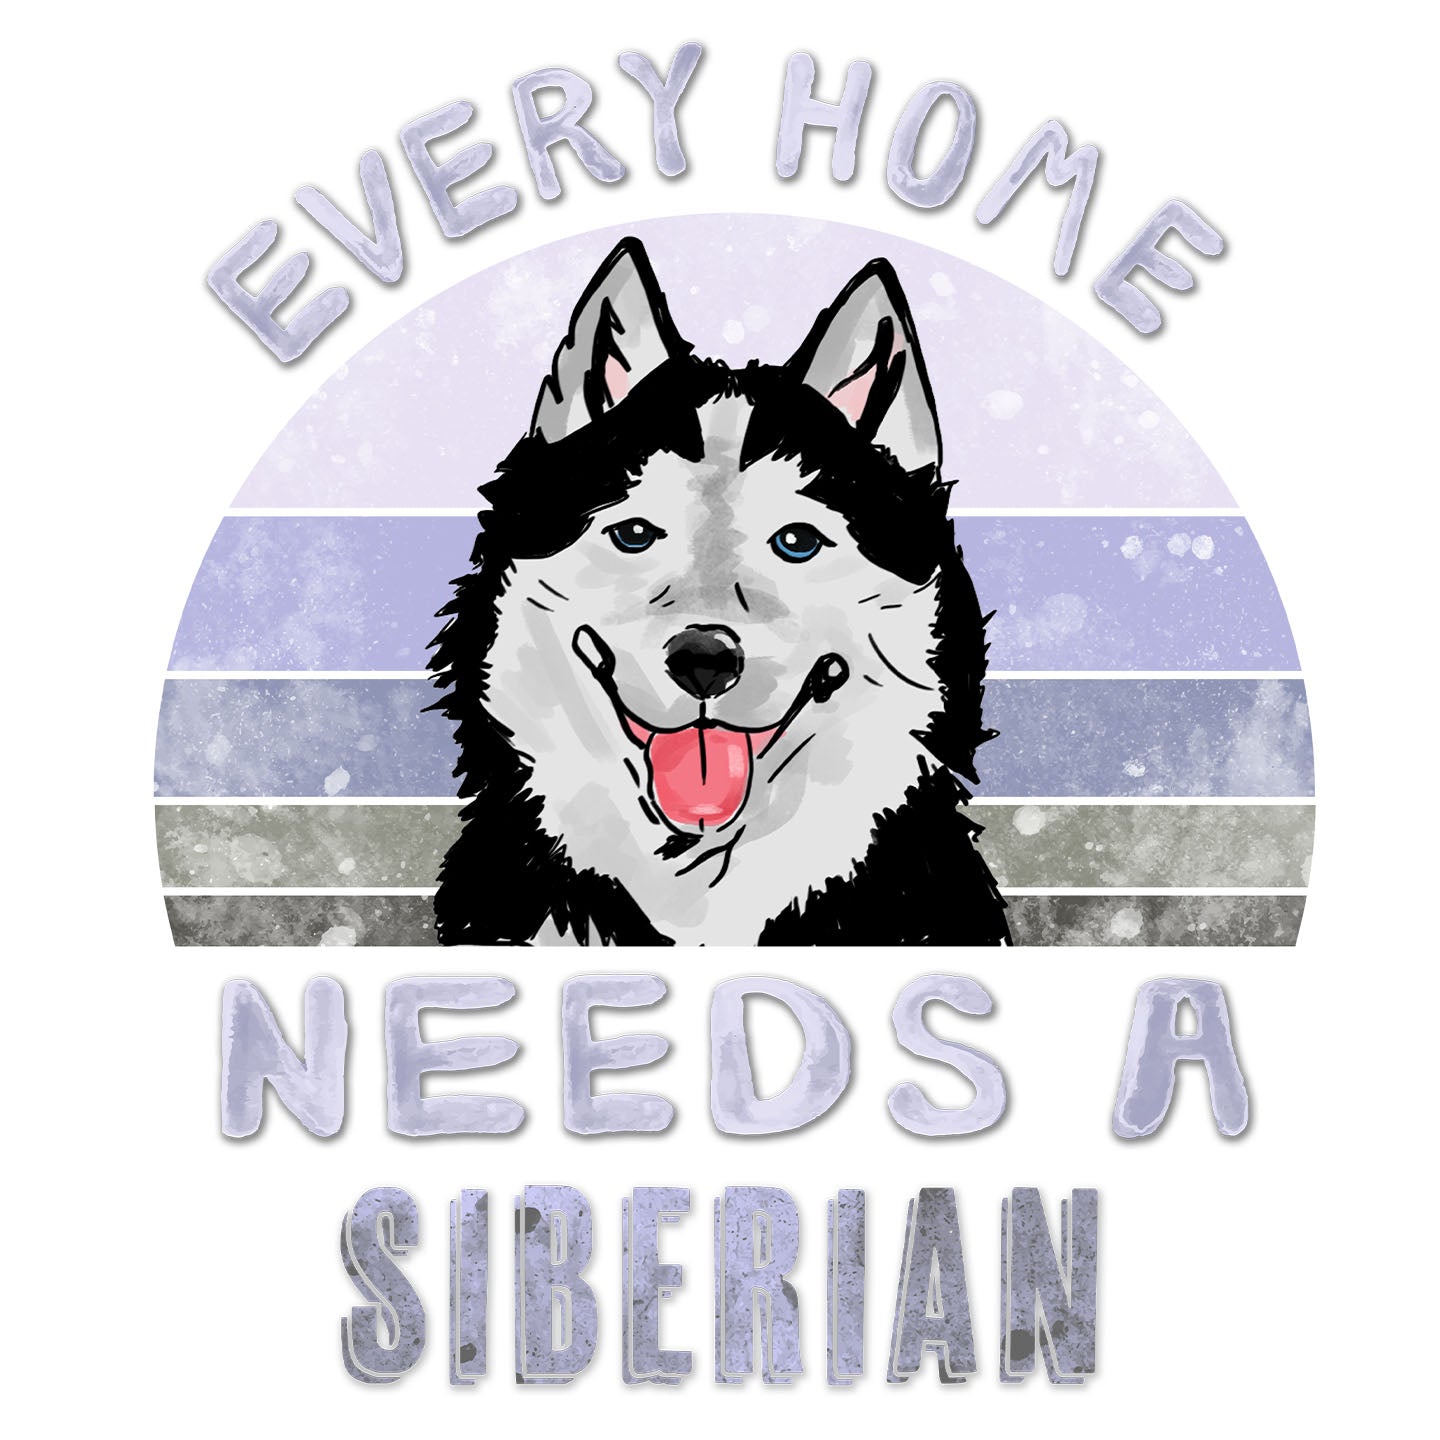 Every Home Needs a Siberian Husky - Women's V-Neck T-Shirt